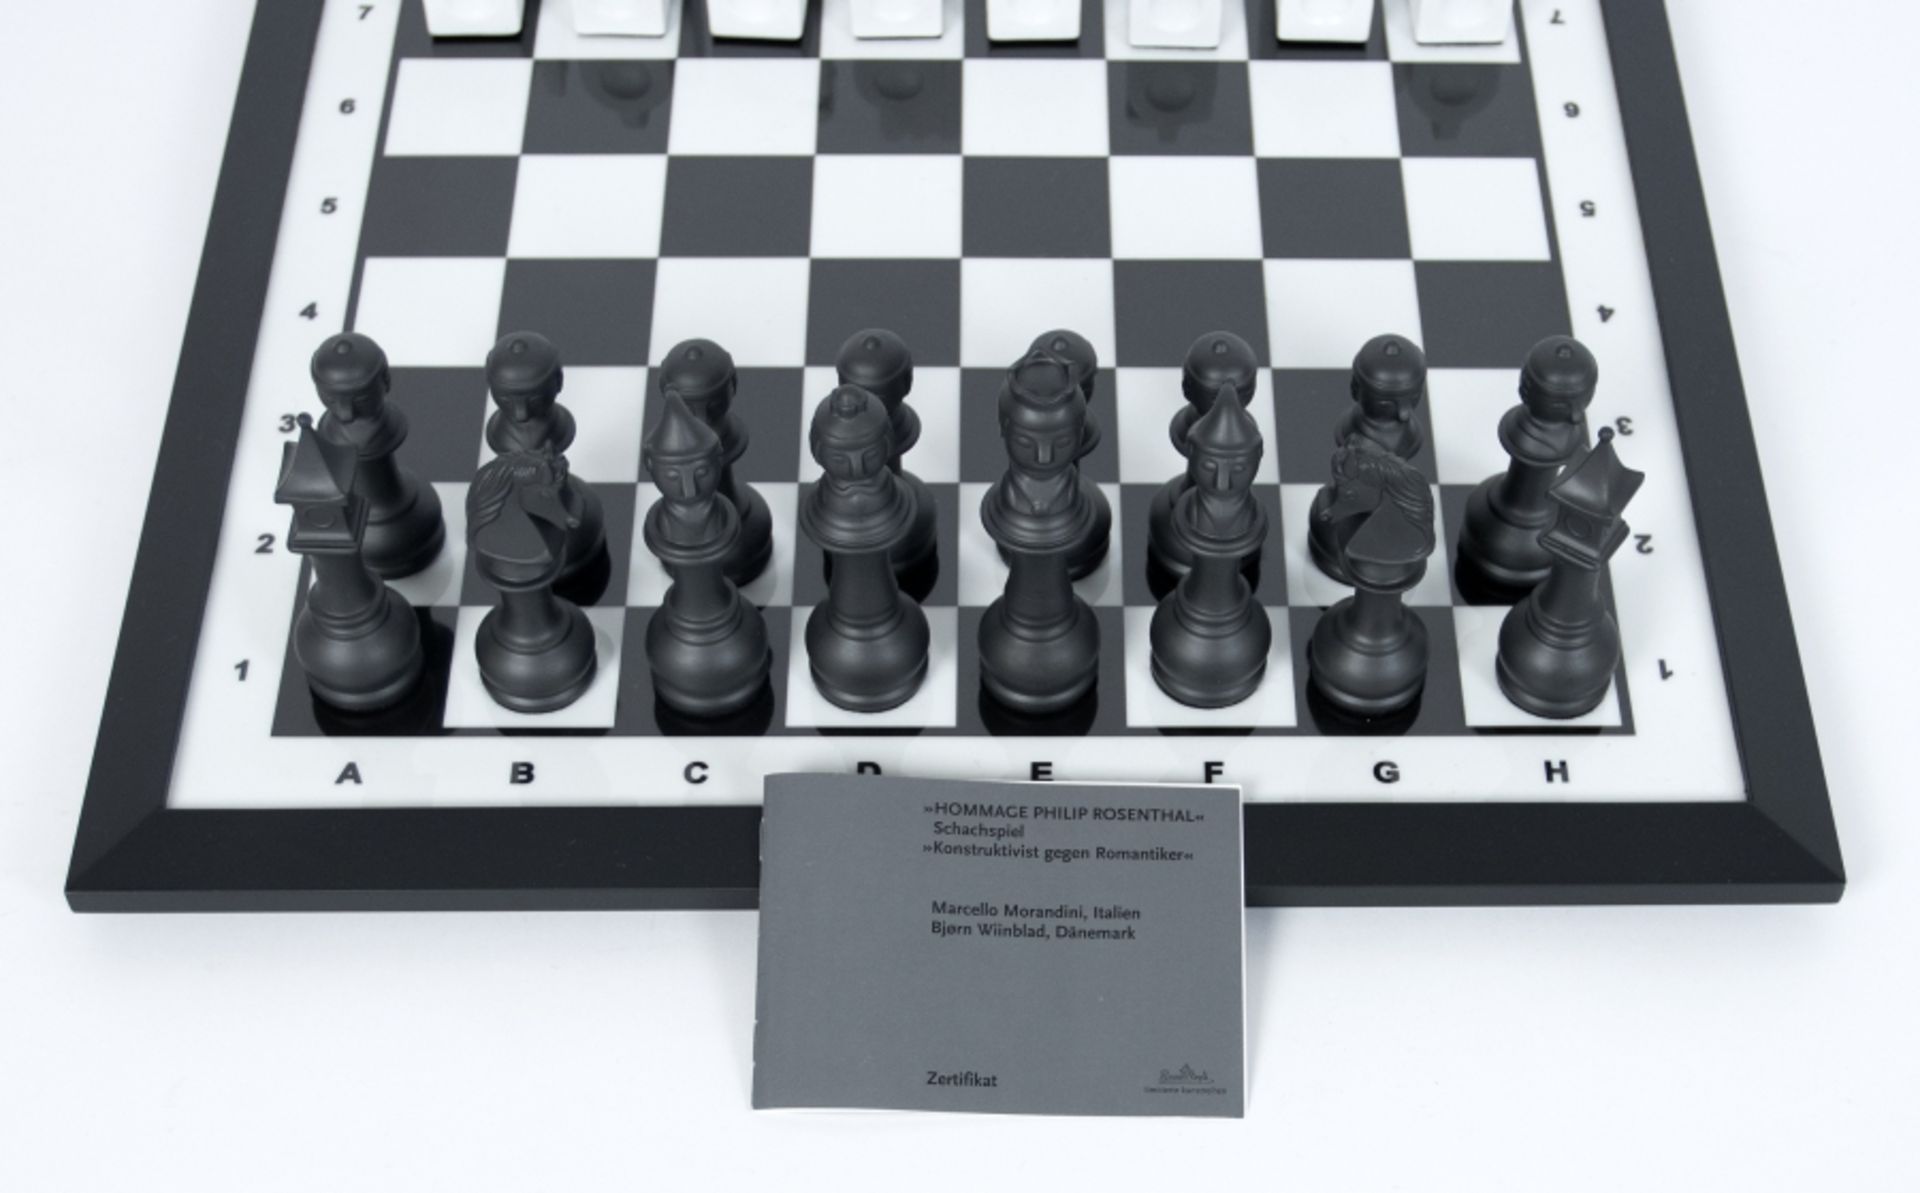 Morandini und Björn Wiinblad, Marcello: Schachspiel "Konstruktivist gegen Romantiker" - Bild 3 aus 4